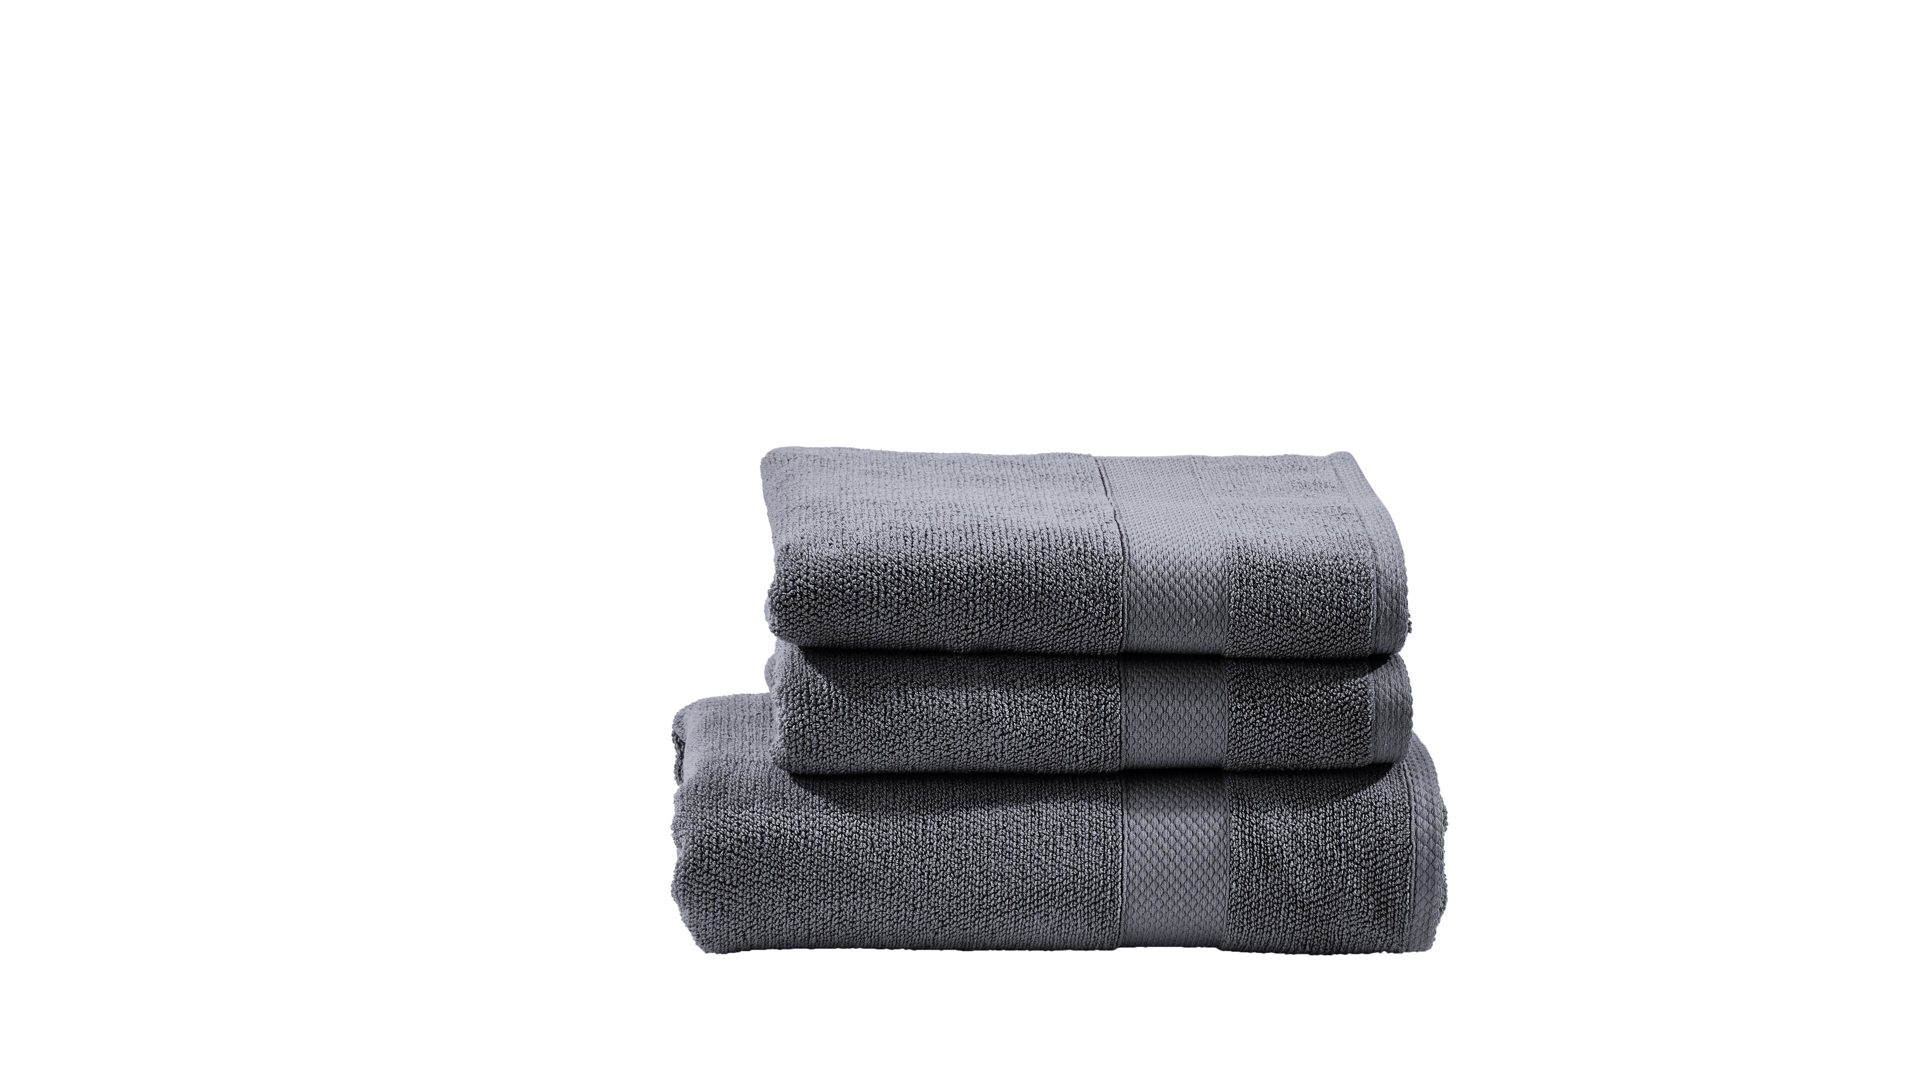 Handtuch-Set Done® be different aus Stoff in Anthrazit DONE® Handtuch-Set Deluxe anthrazitfarbene Baumwolle  – dreiteilig